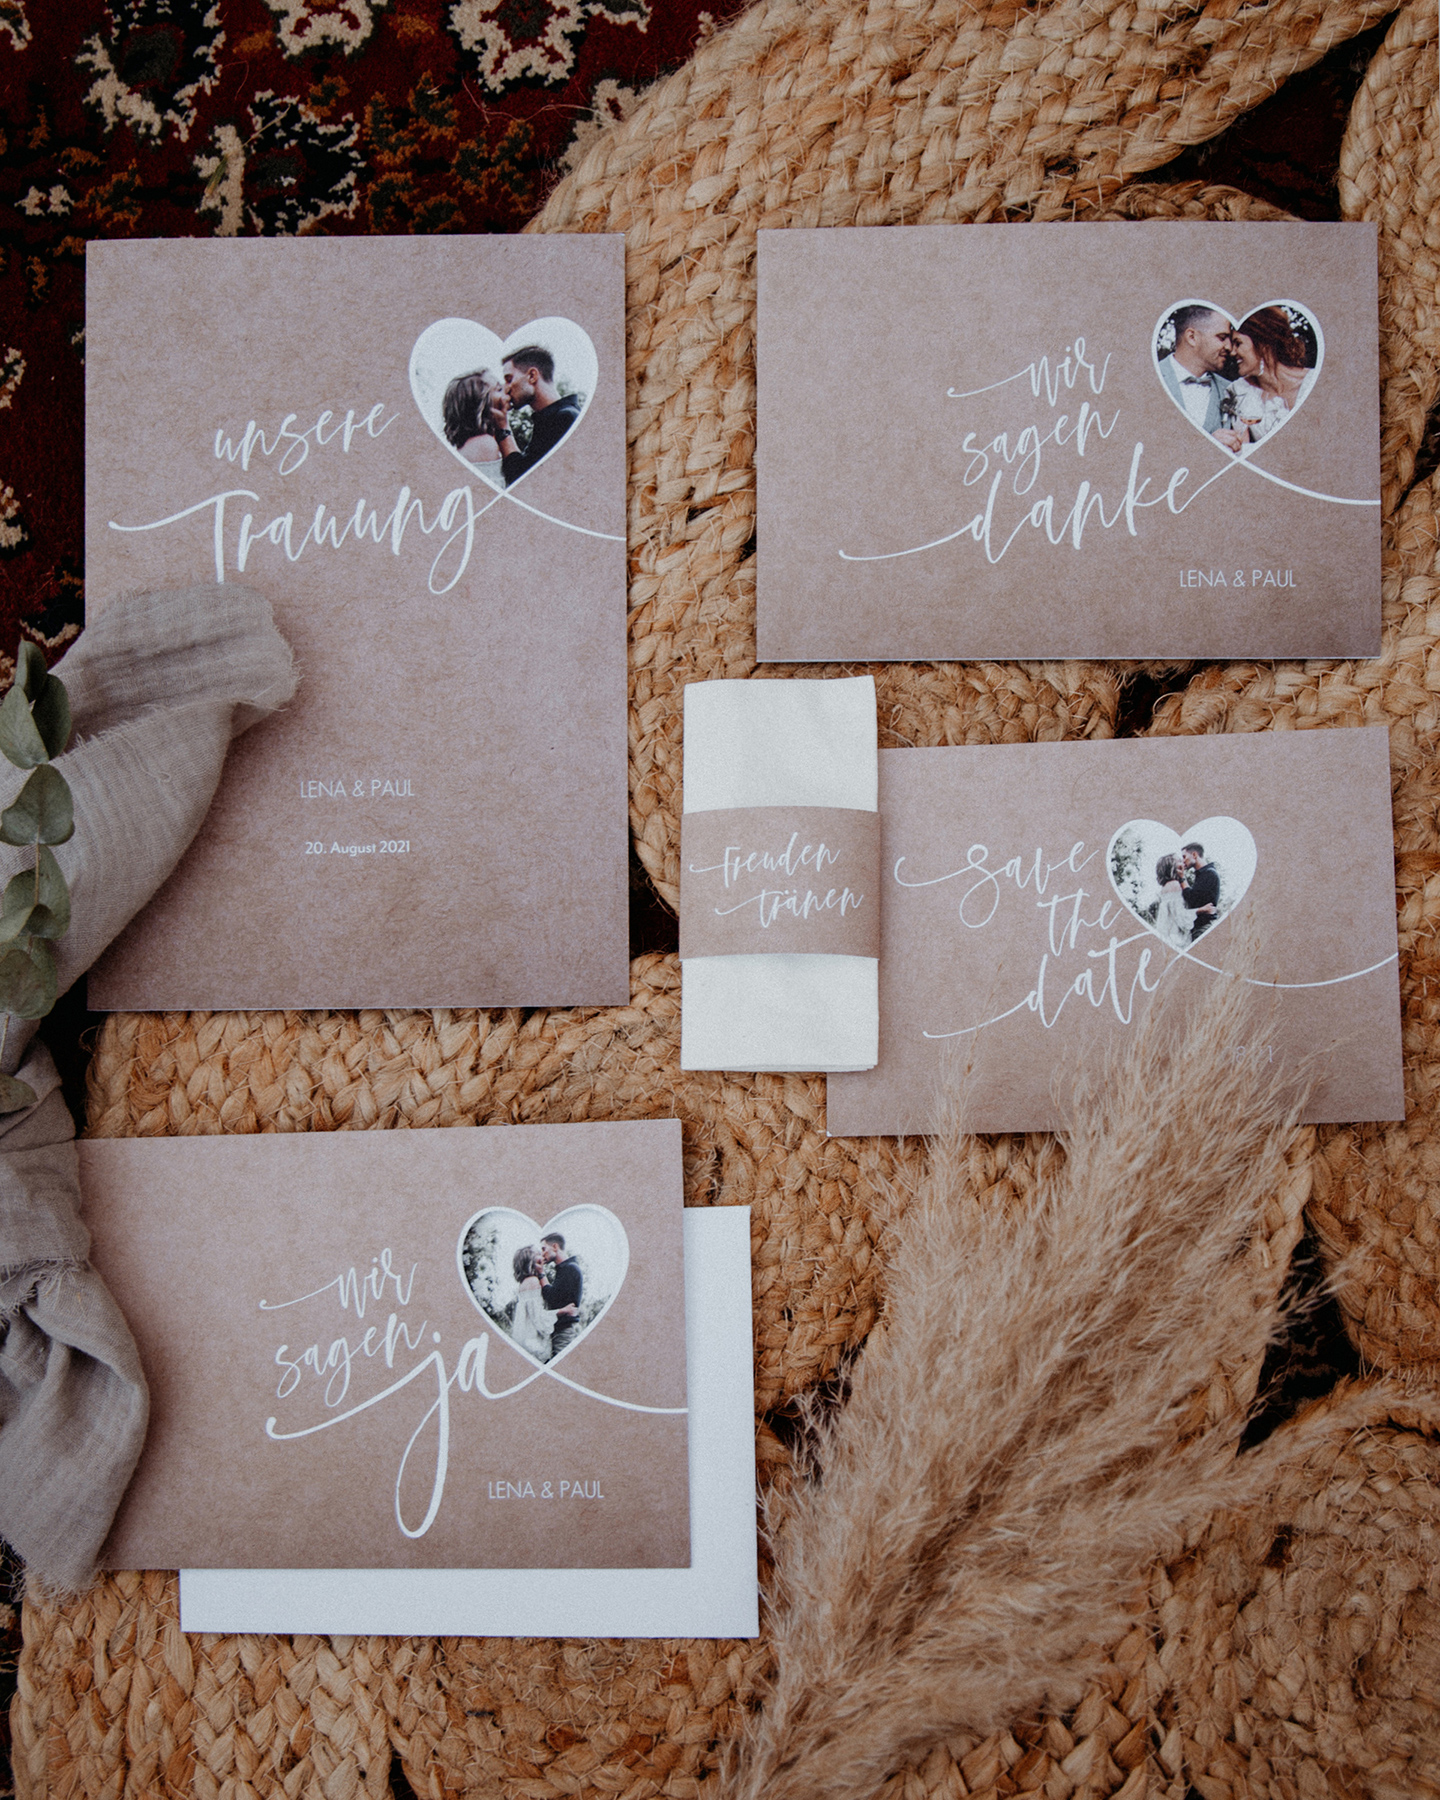 Hochzeitspapeterie im Kraftpapier-Look mit ausgestanztem Herz für Hochzeitsfoto.